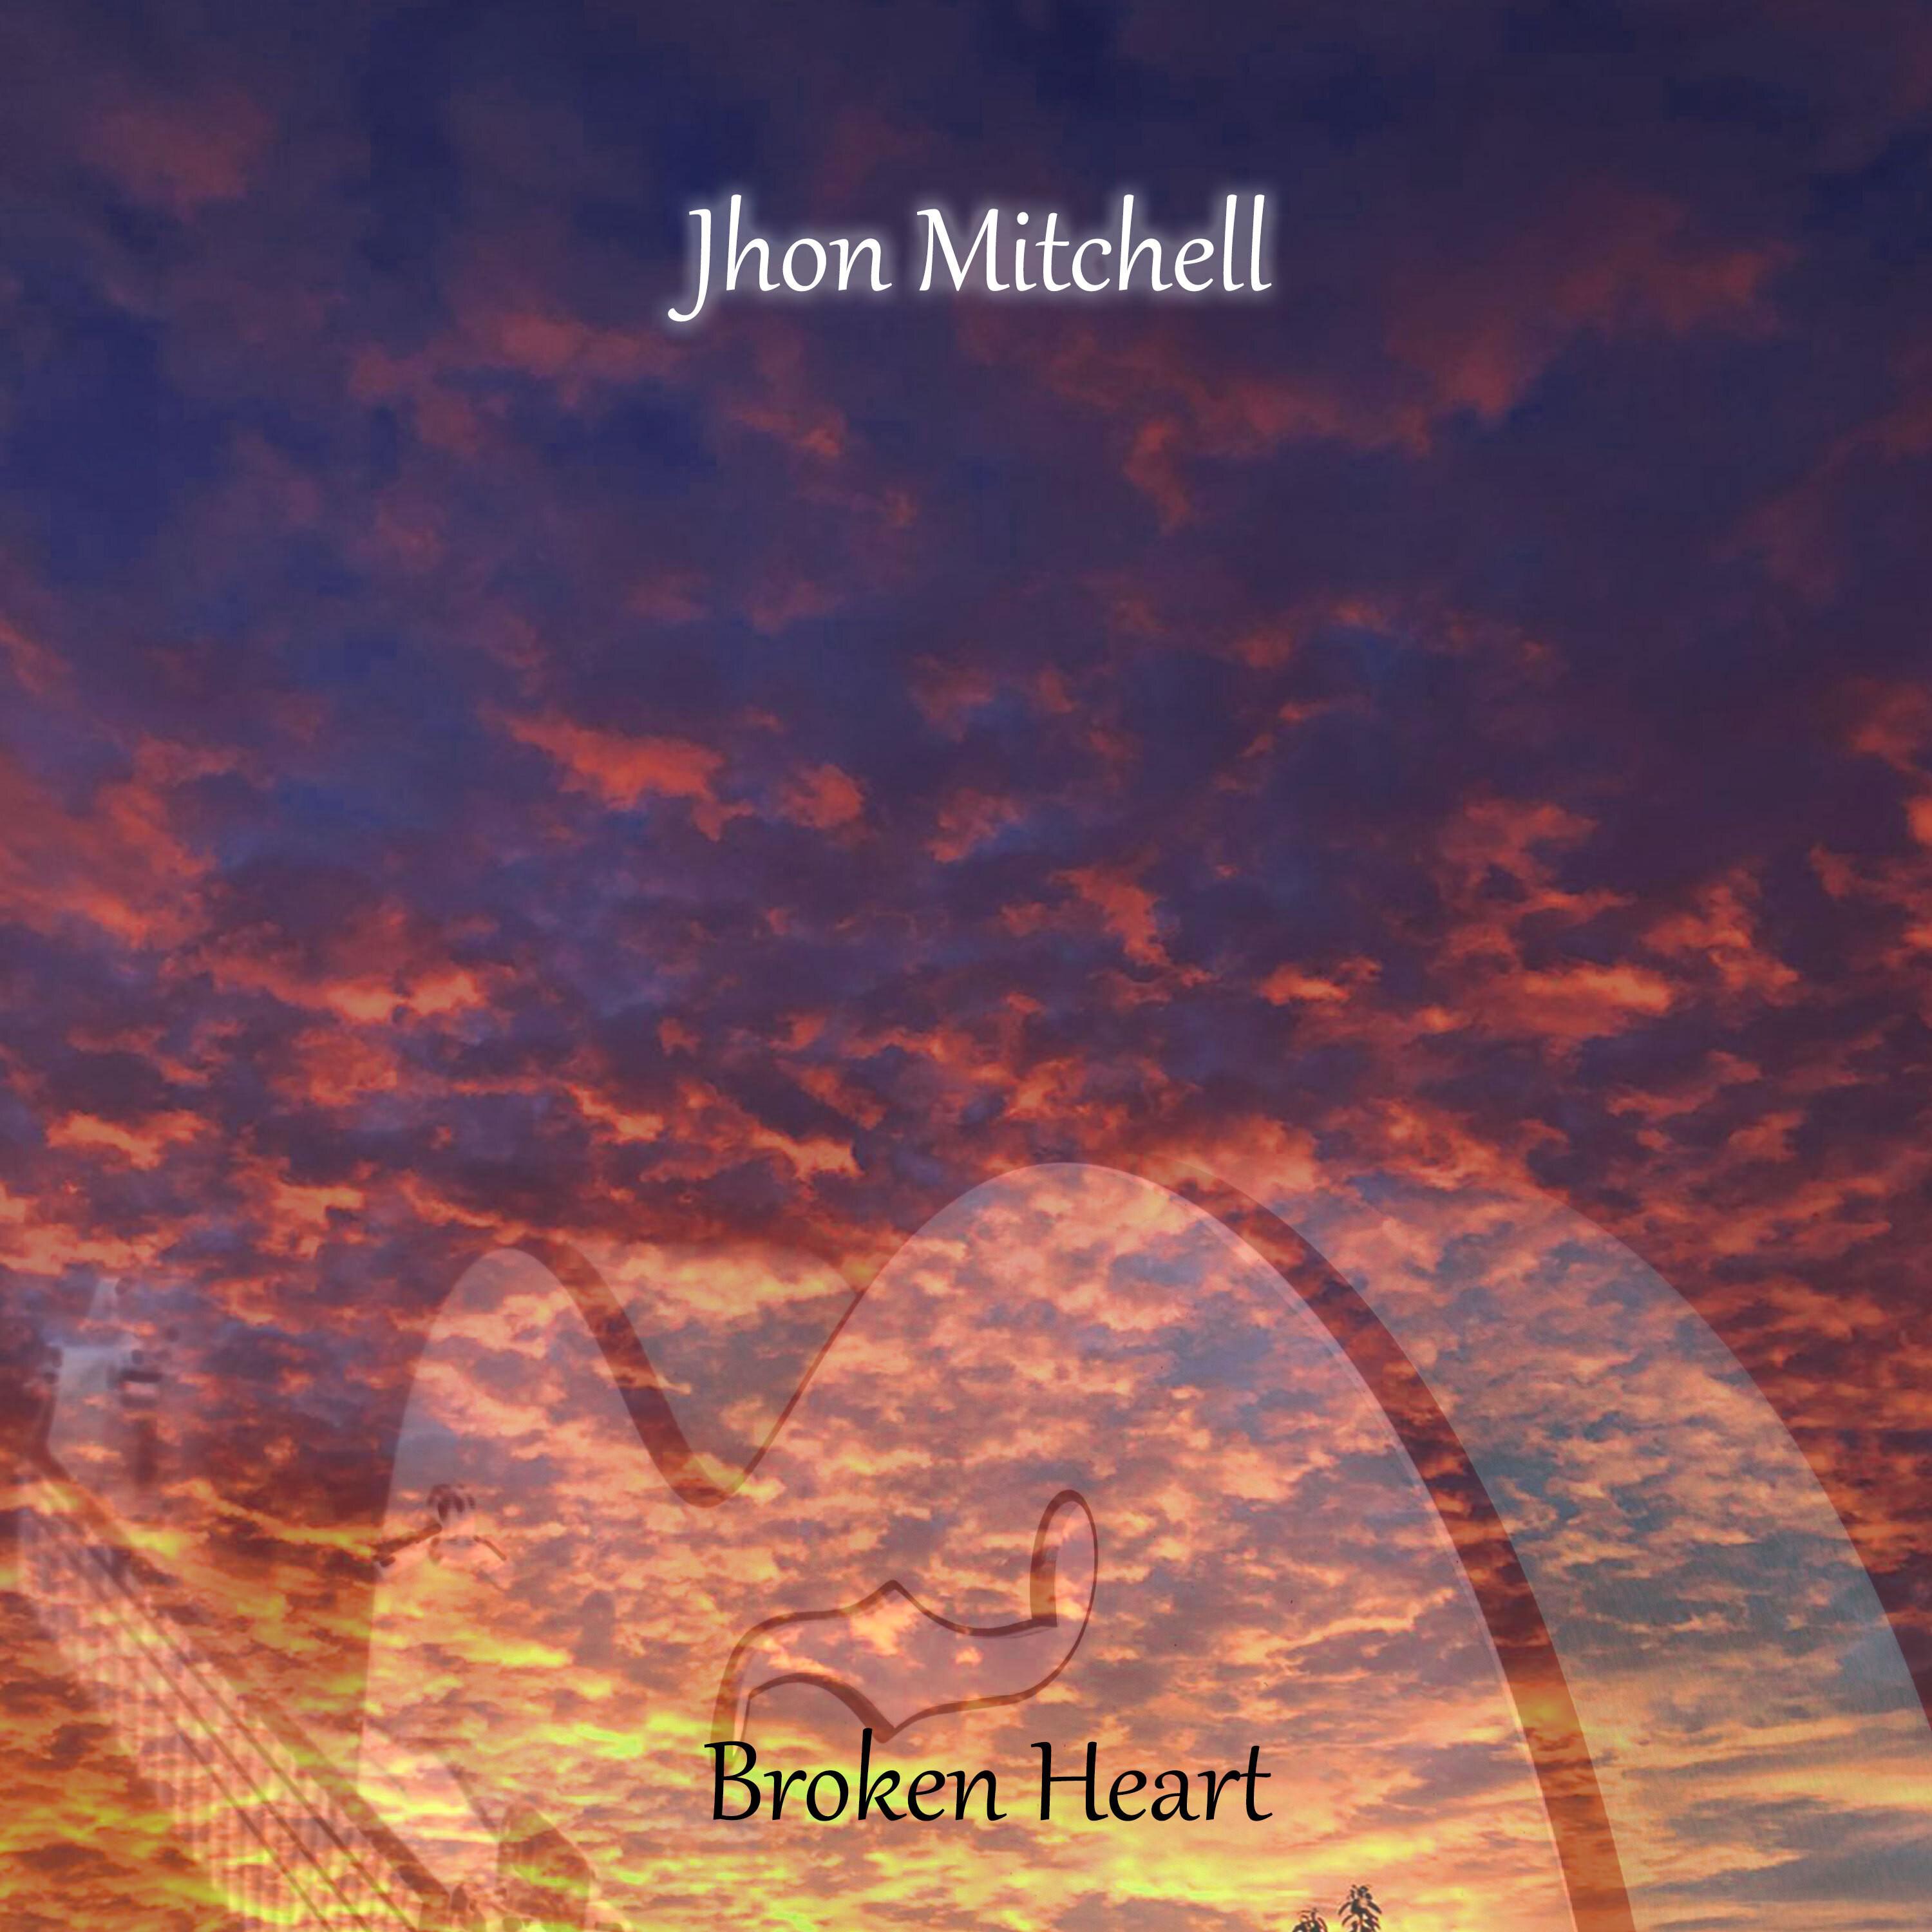 Jhon Mitchell - Last Tears